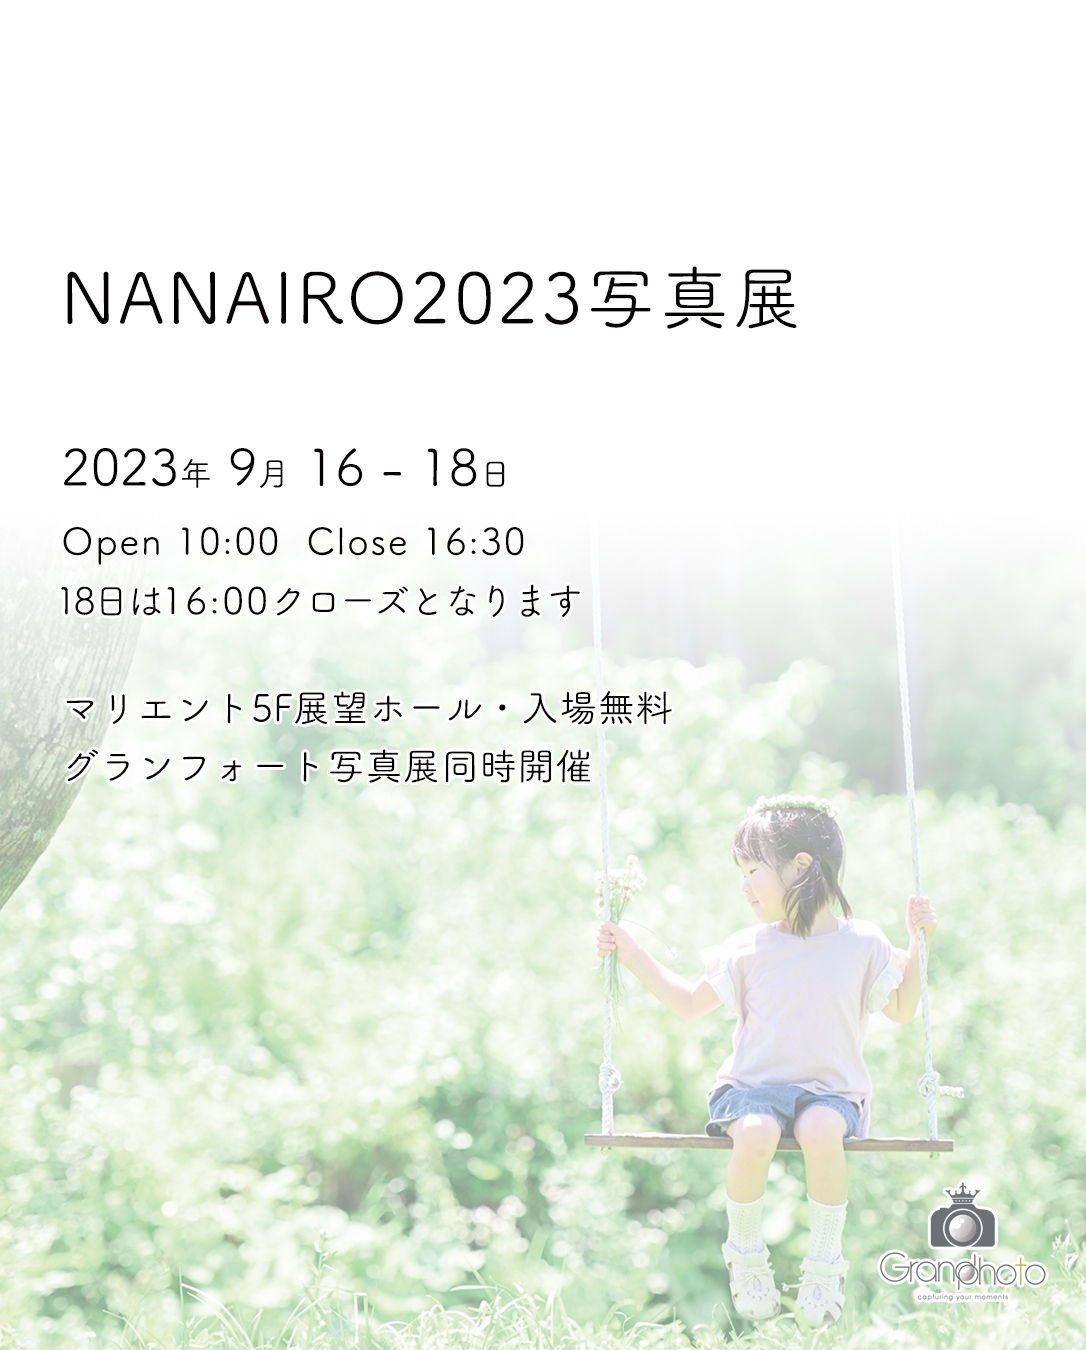 nananiro2023